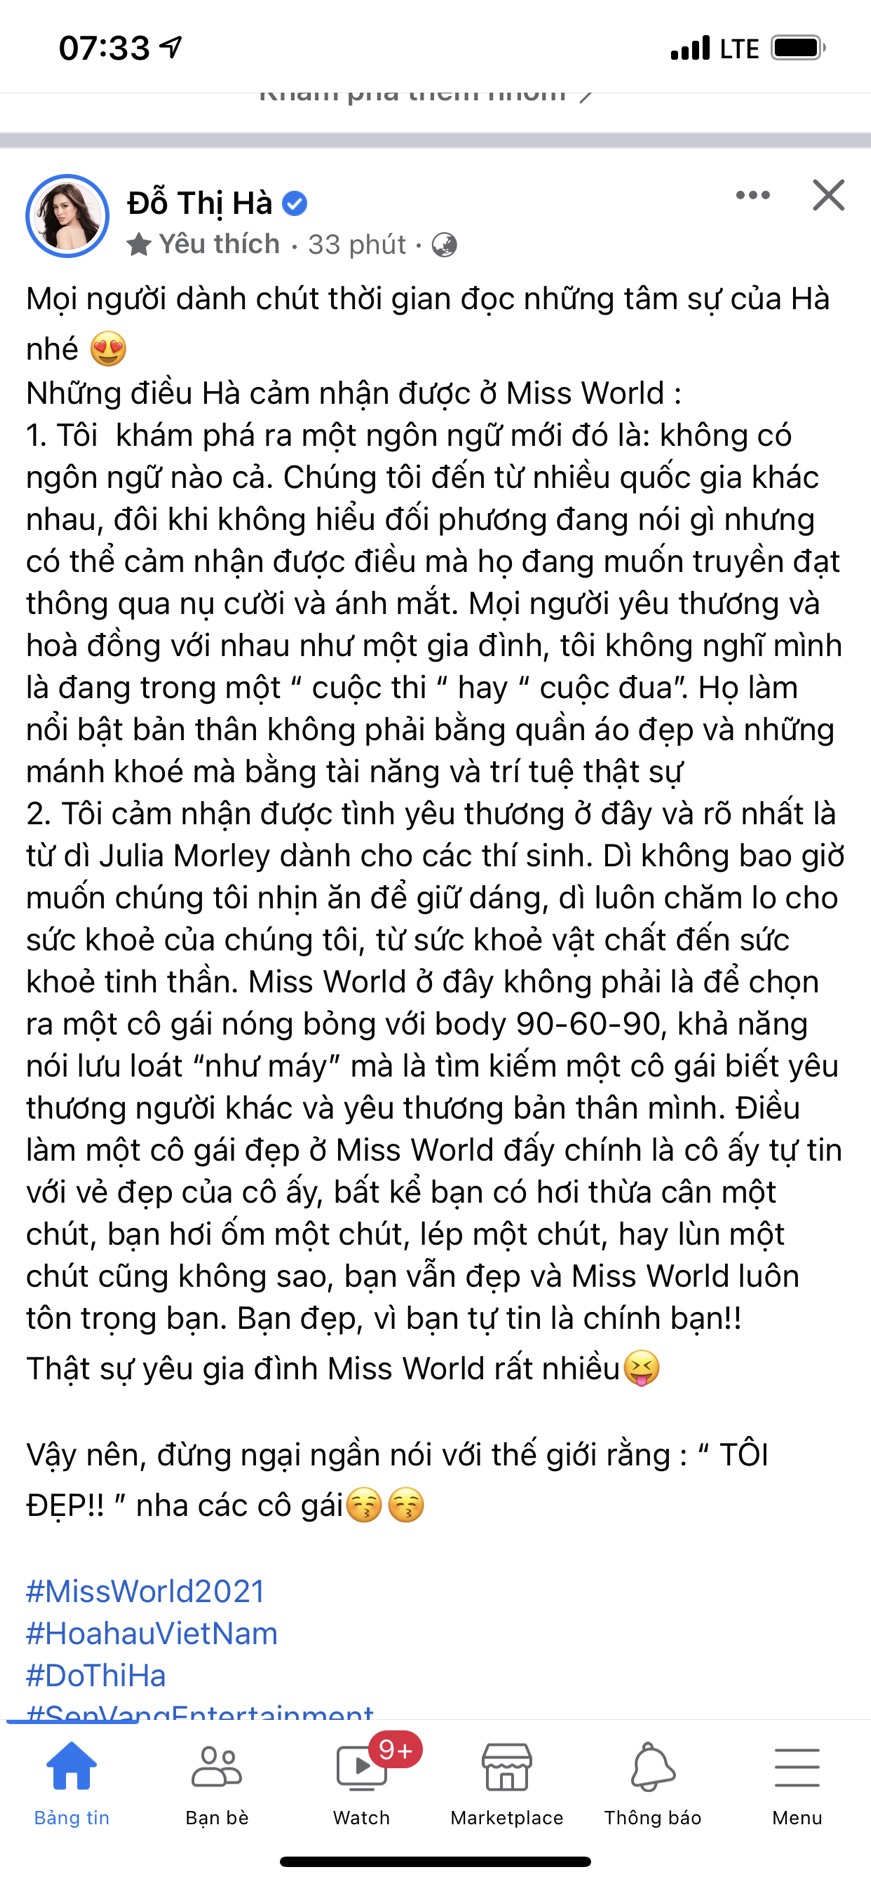 Bài viết dài được Hoa hậu Đỗ Thị Hà đăng tải cách đây ít giờ